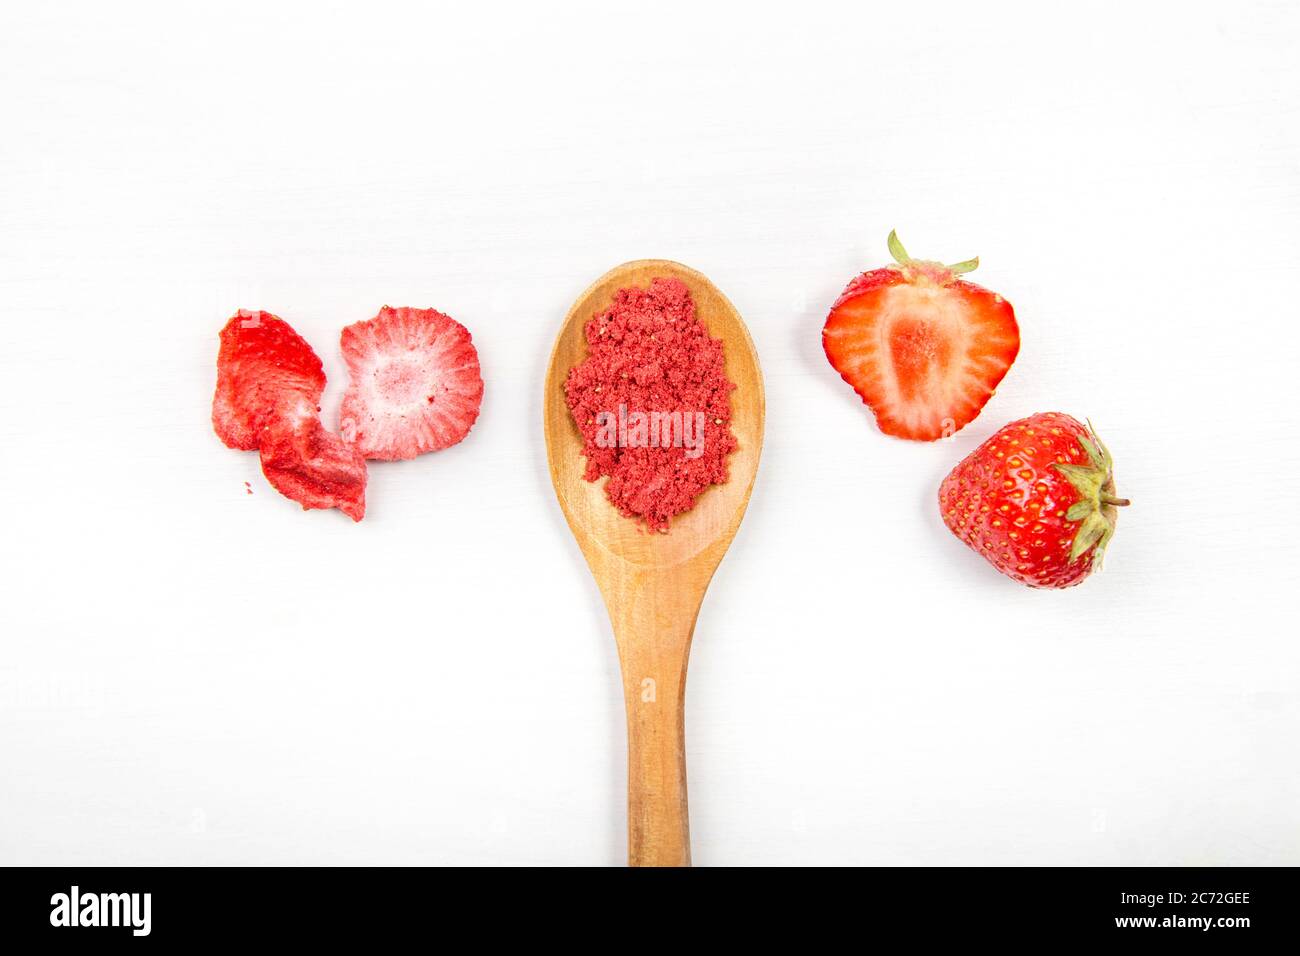 Poudre de fraise composée de fraises lyophilisées pour saupoudrer. Ingrédient de saveur et de couleur pour les aliments. Vue de dessus, fond blanc minimal, espace de copie Banque D'Images